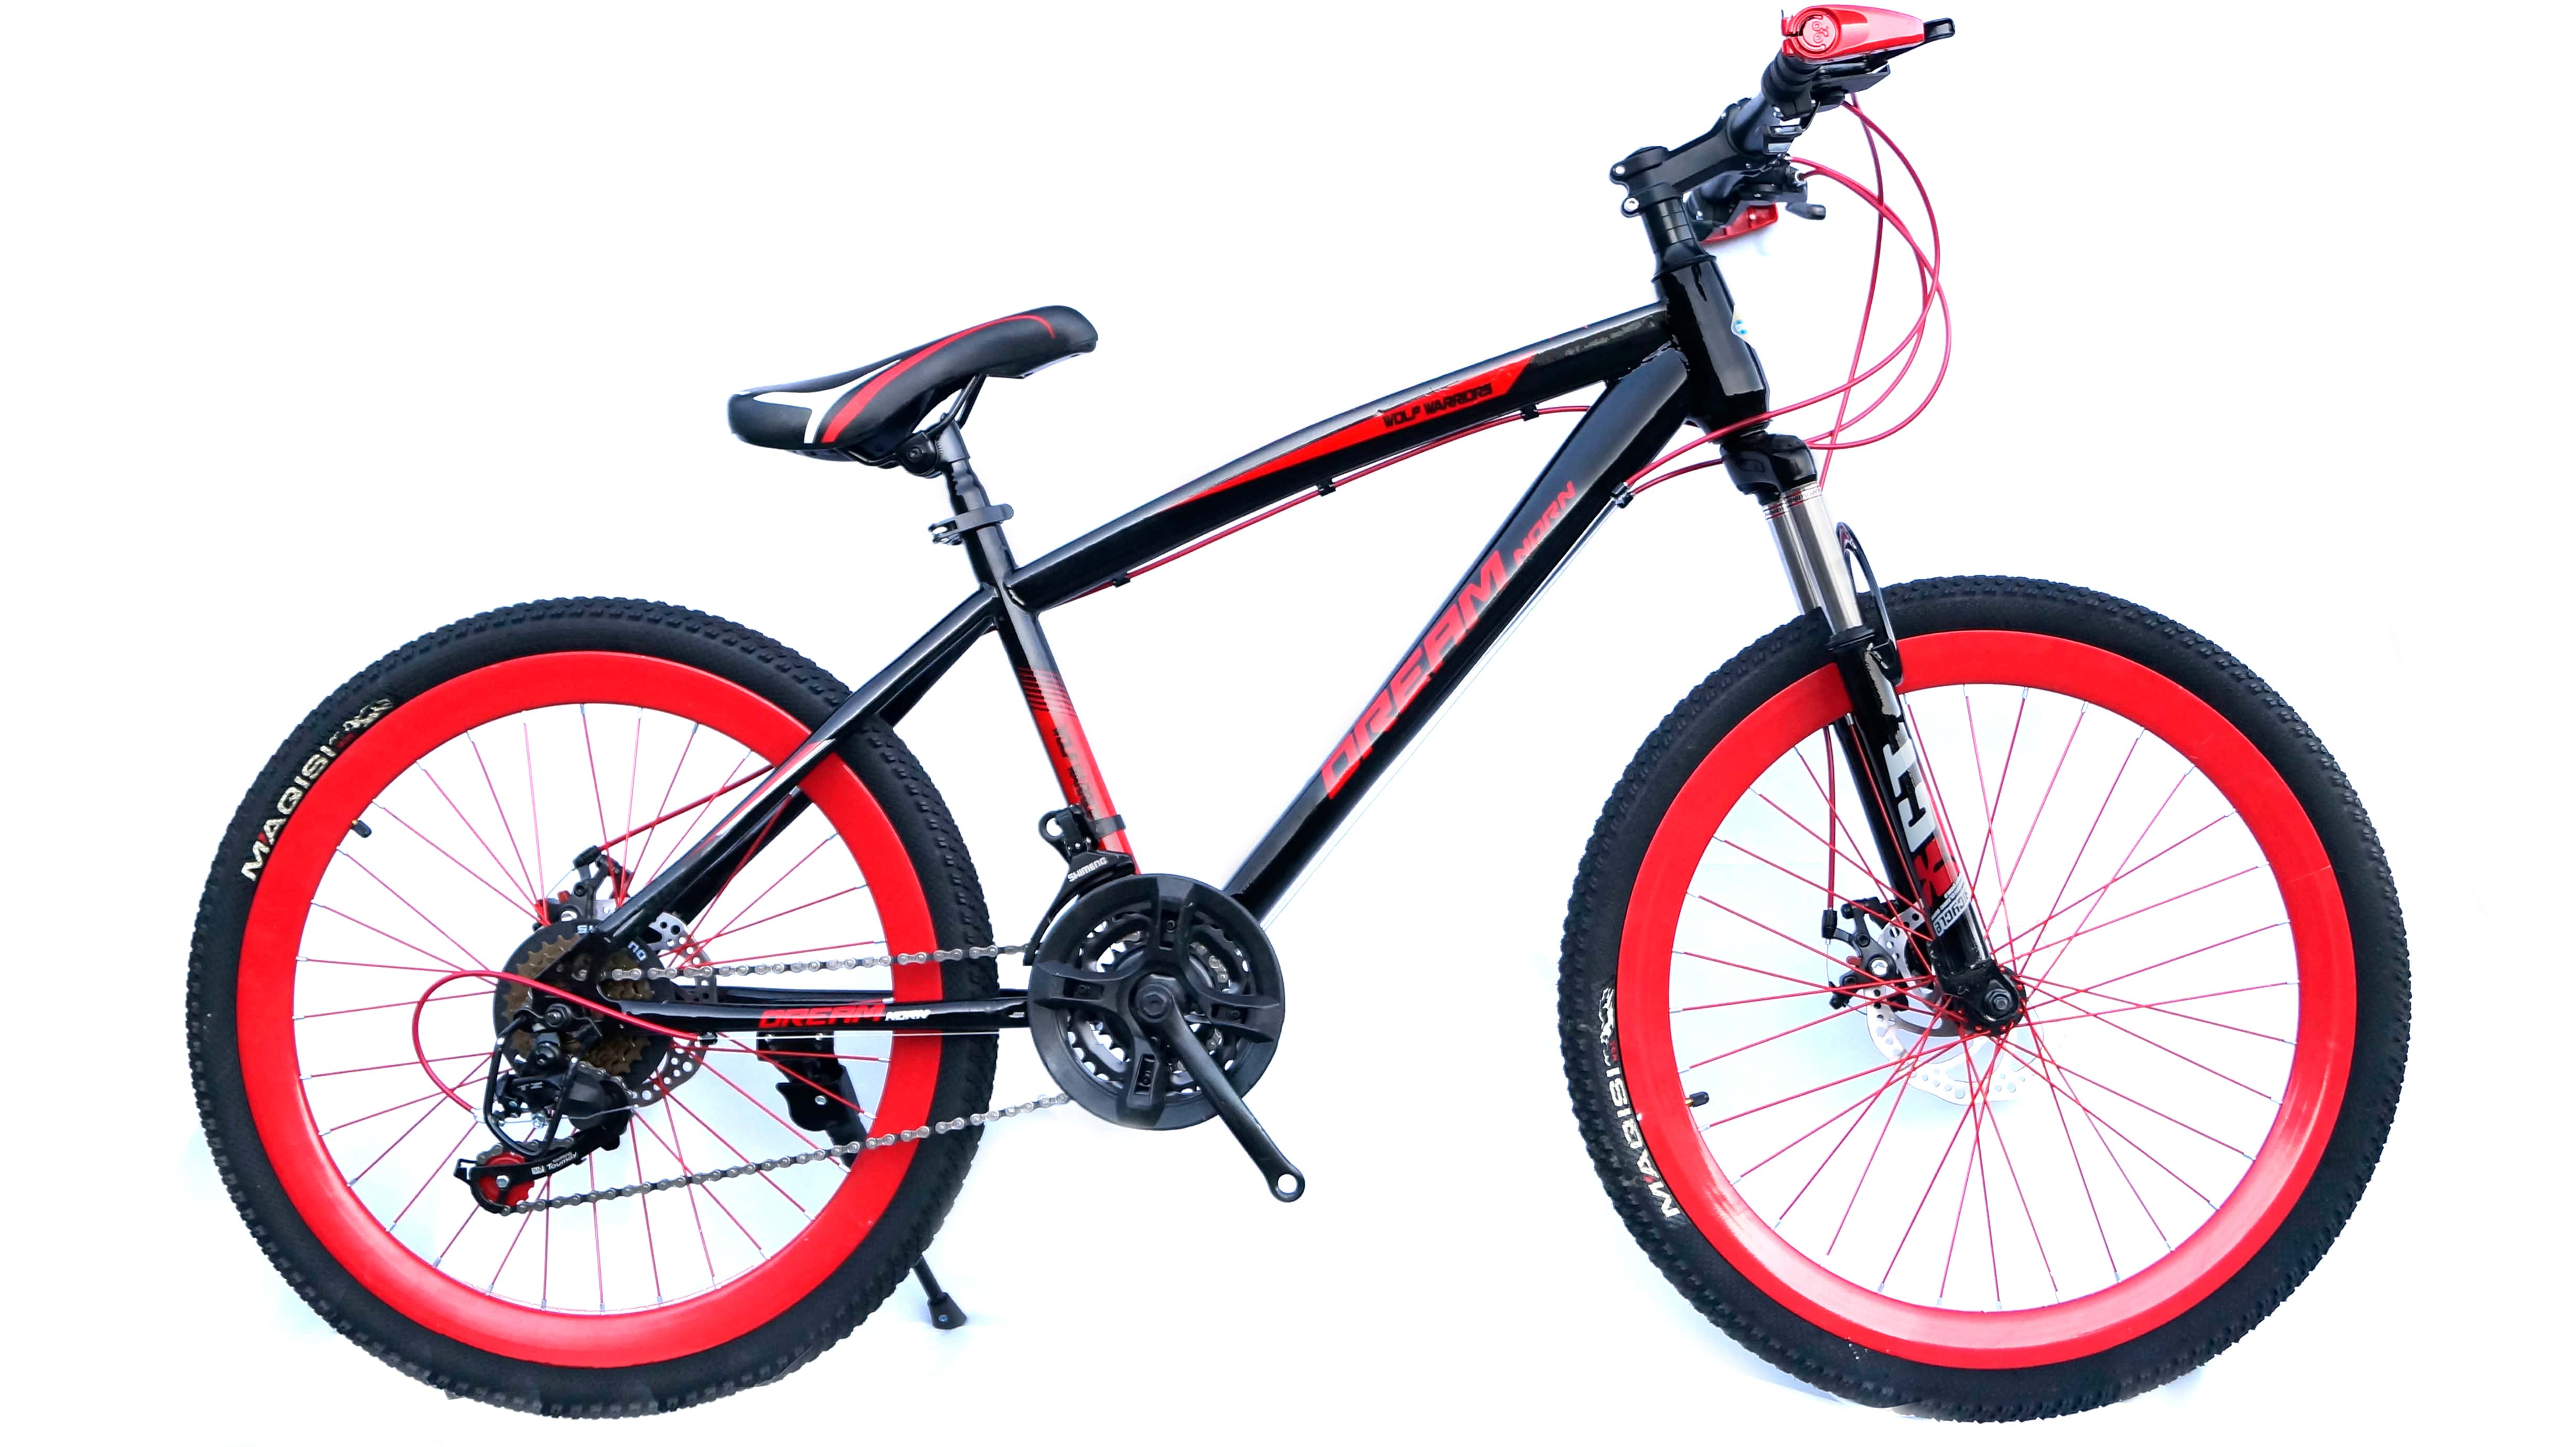 Подростковый велосипед рама 24. Скоростной велосипед 24 дюйма. Велосипед подростковый 24 дюйма. Велосипед подростковый 24 дюйма 14 рама. Колёса 24 дюйма на велосипед.